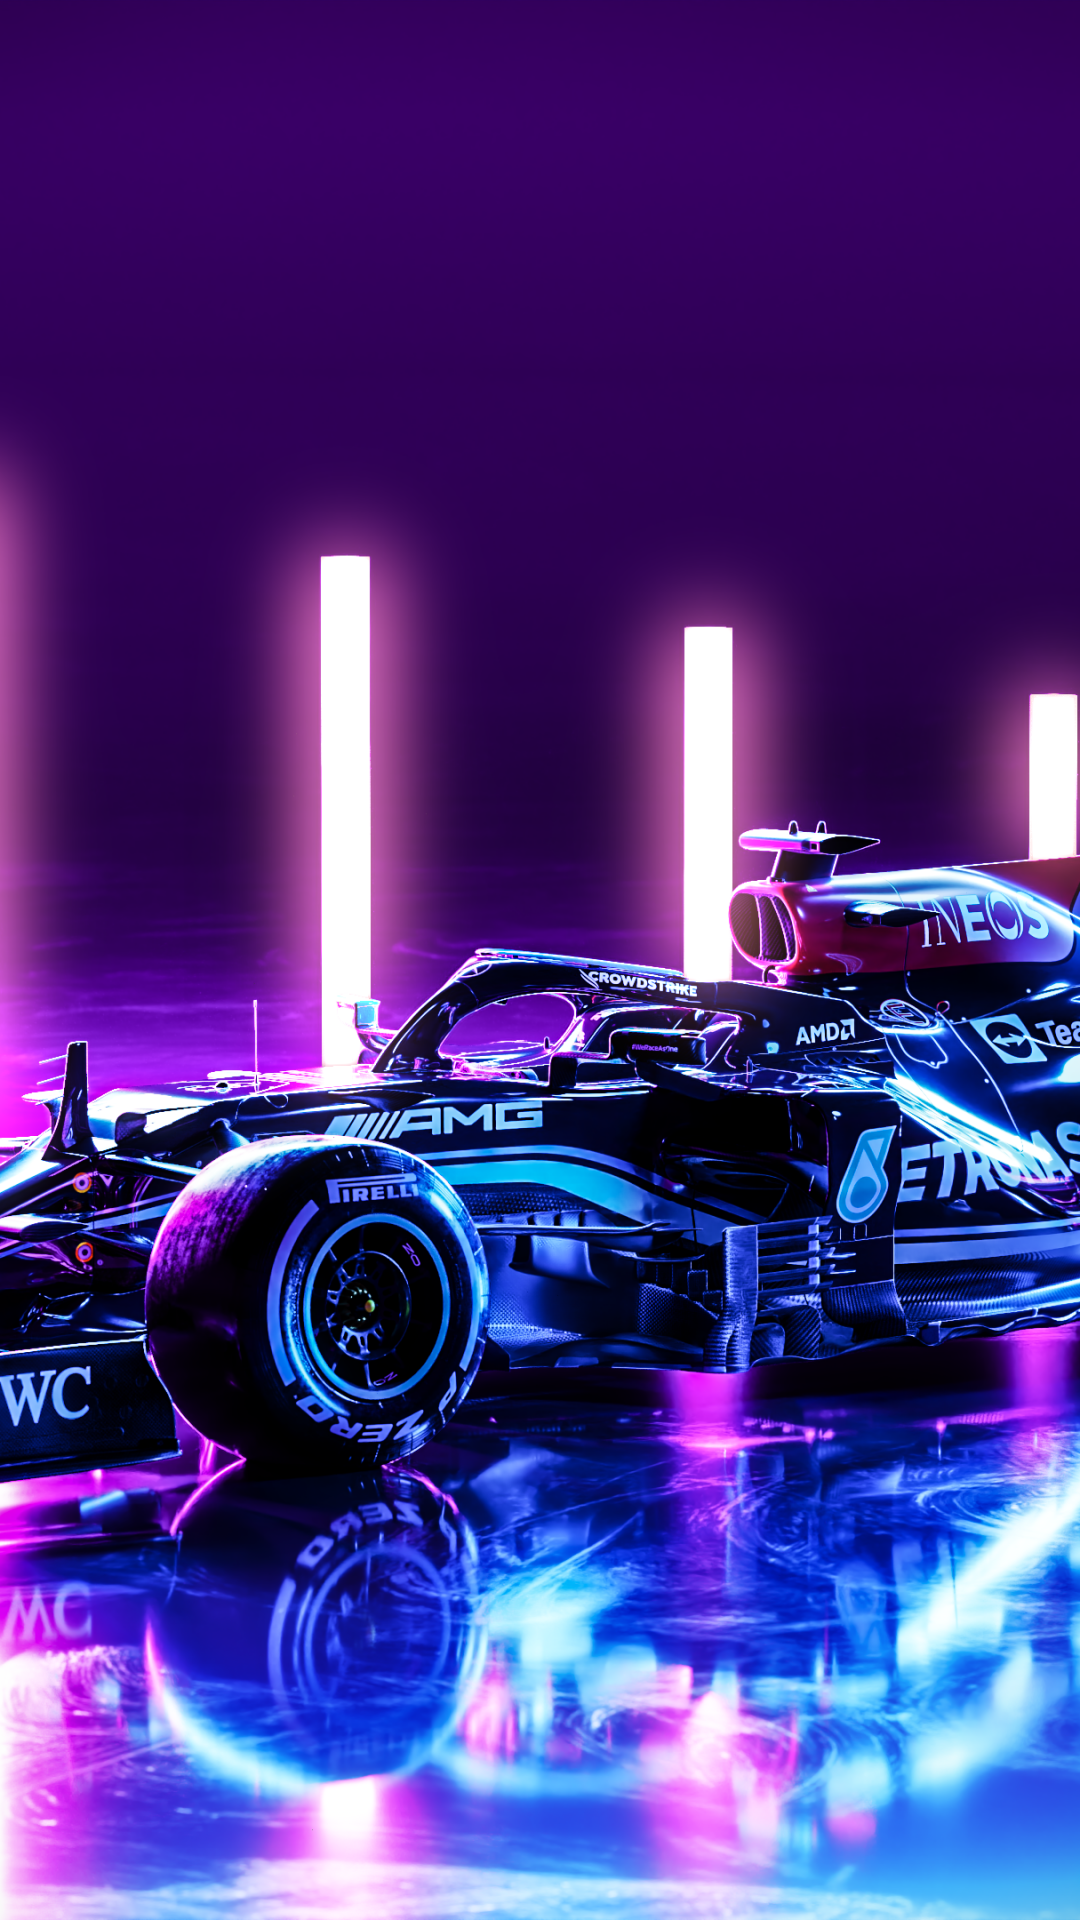 Xem ngay hình ảnh xe đua công thức E Formula và Mercedes-AMG F1 W12 E Performance Wallpaper 4K để trải nghiệm cảm giác tốc độ và cực kỳ mạnh mẽ. Tái hiện lại những khoảnh khắc quyết liệt trên đường đua với độ phân giải 4K sắc nét.